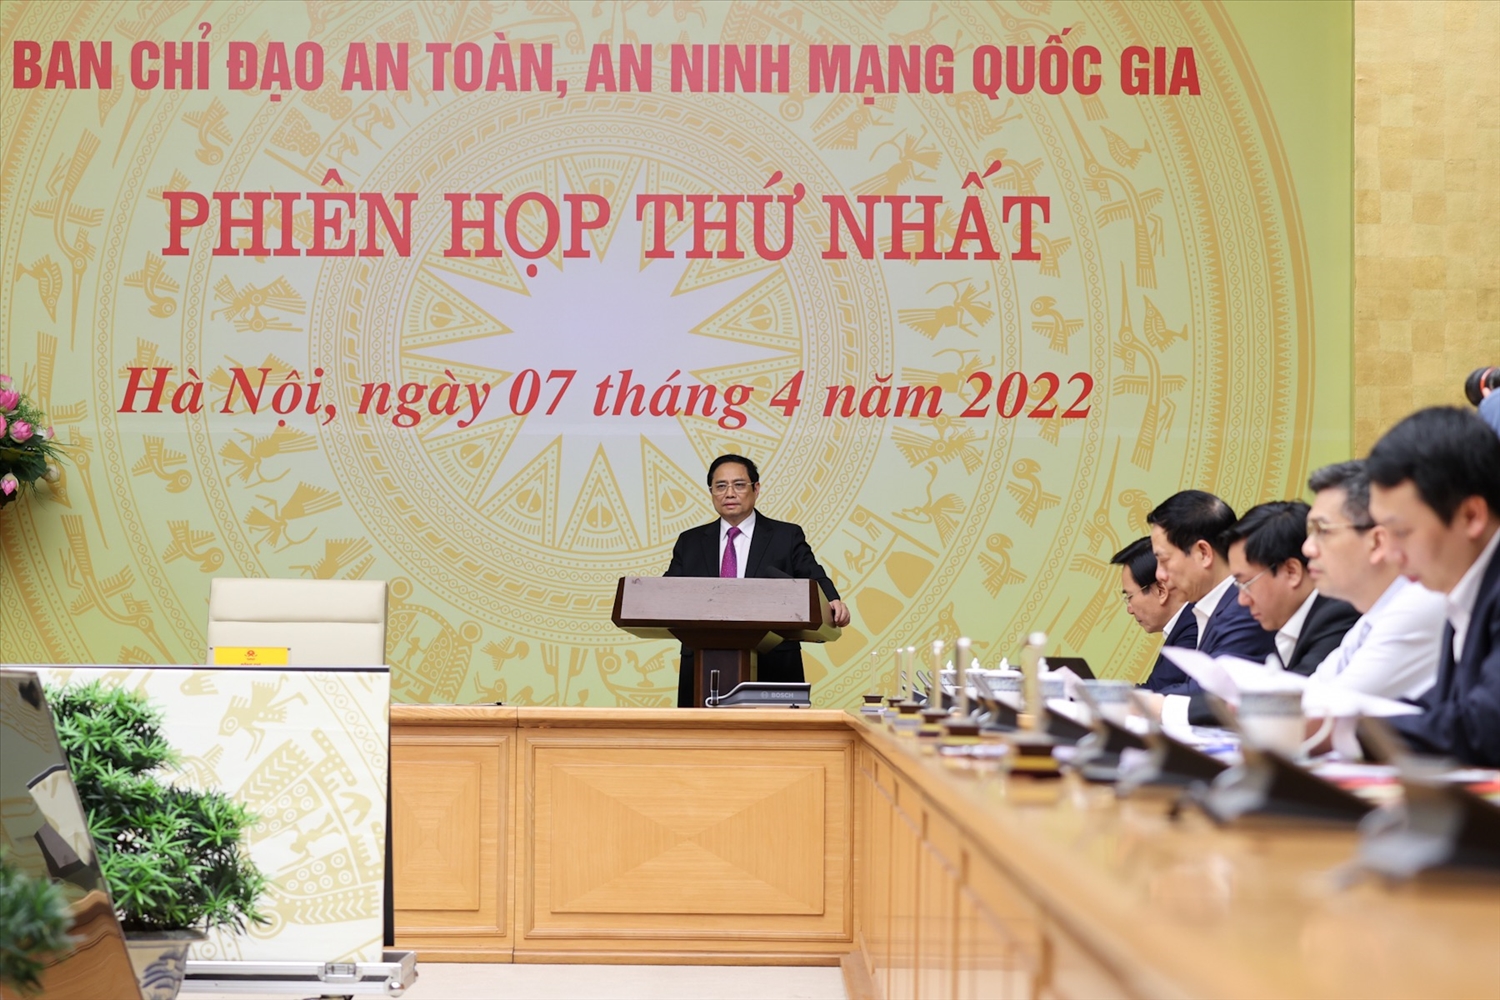 Thủ tướng Phạm Minh Chính: Chủ động bảo vệ độc lập, chủ quyền quốc gia, an toàn, an ninh trên không gian mạng - Ảnh: VGP/Nhật Bắc